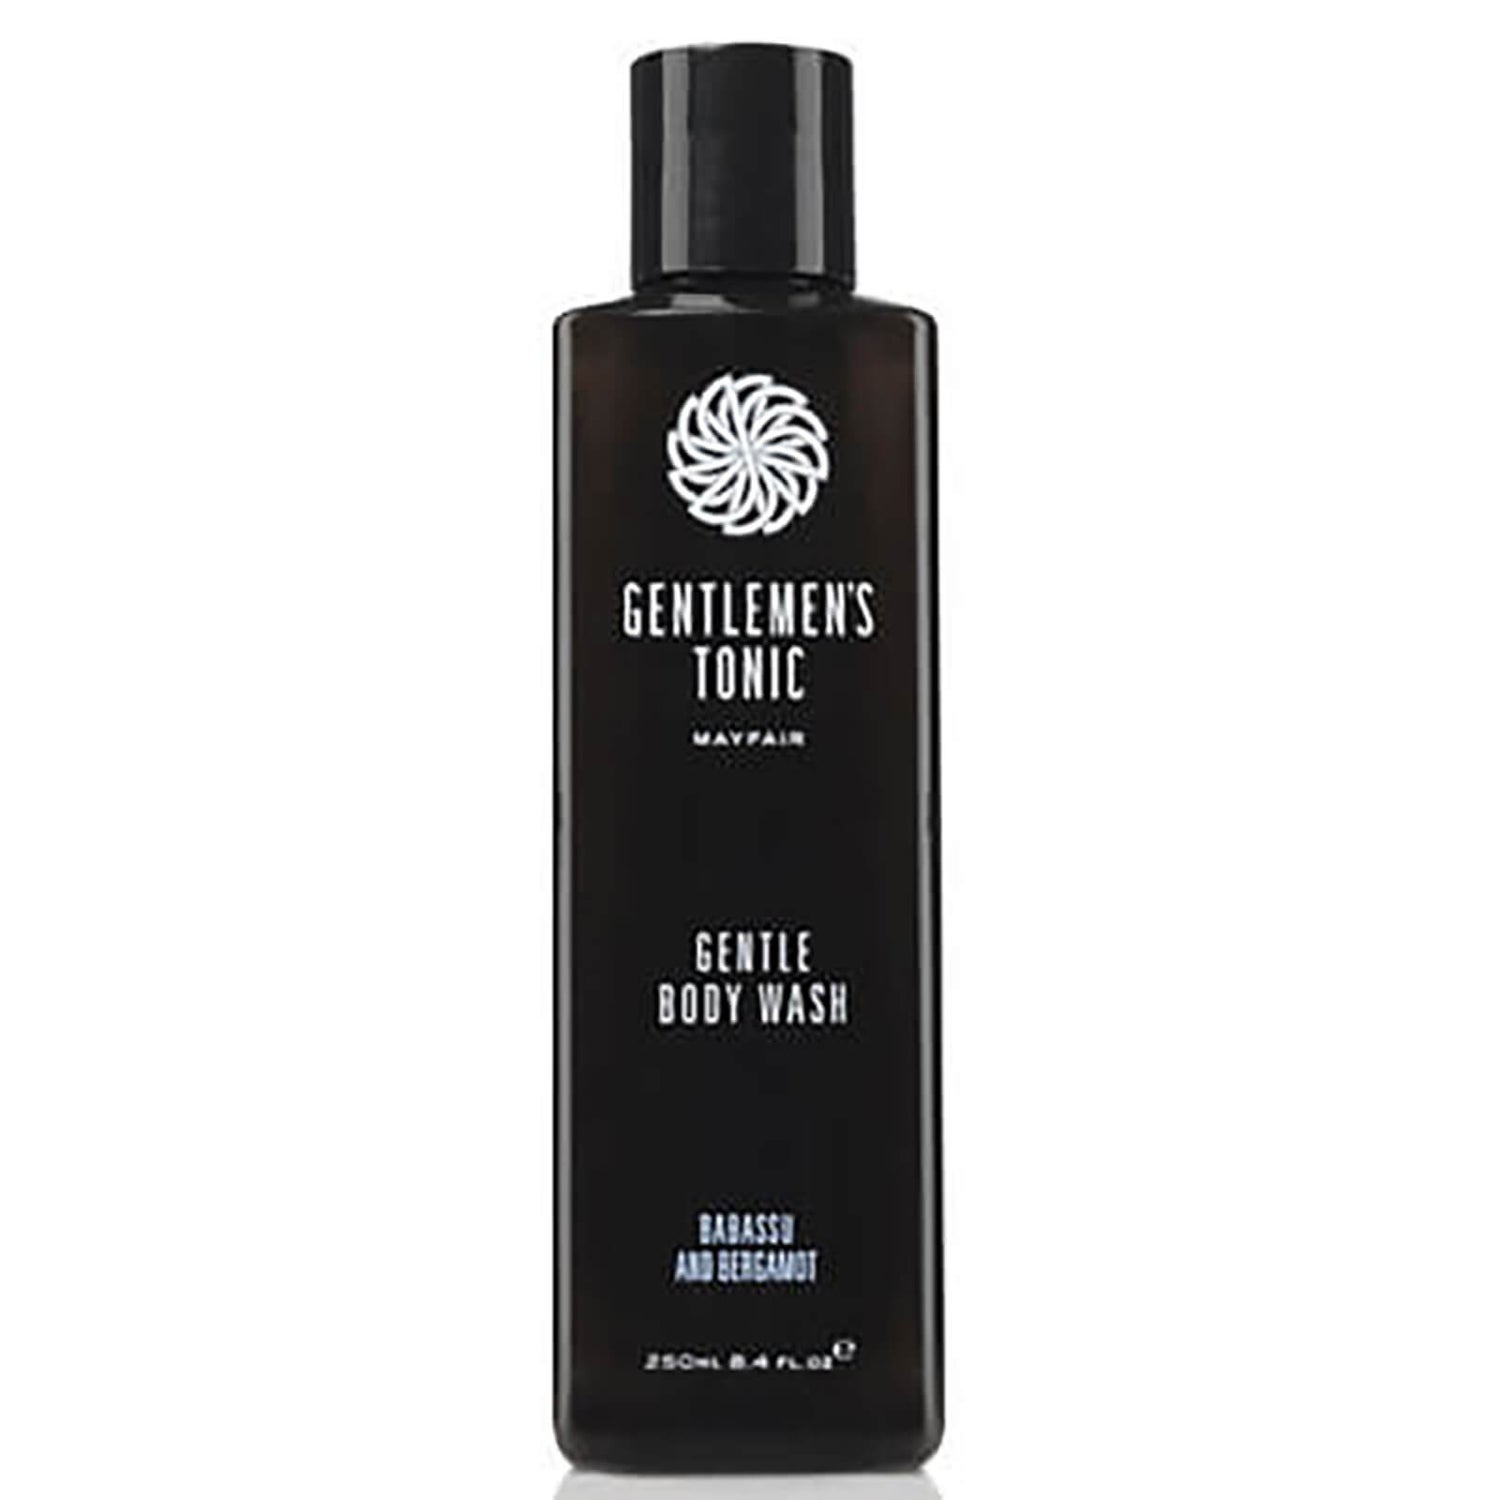 Gentlemen's Tonic Gentle Body Wash (8.4oz)